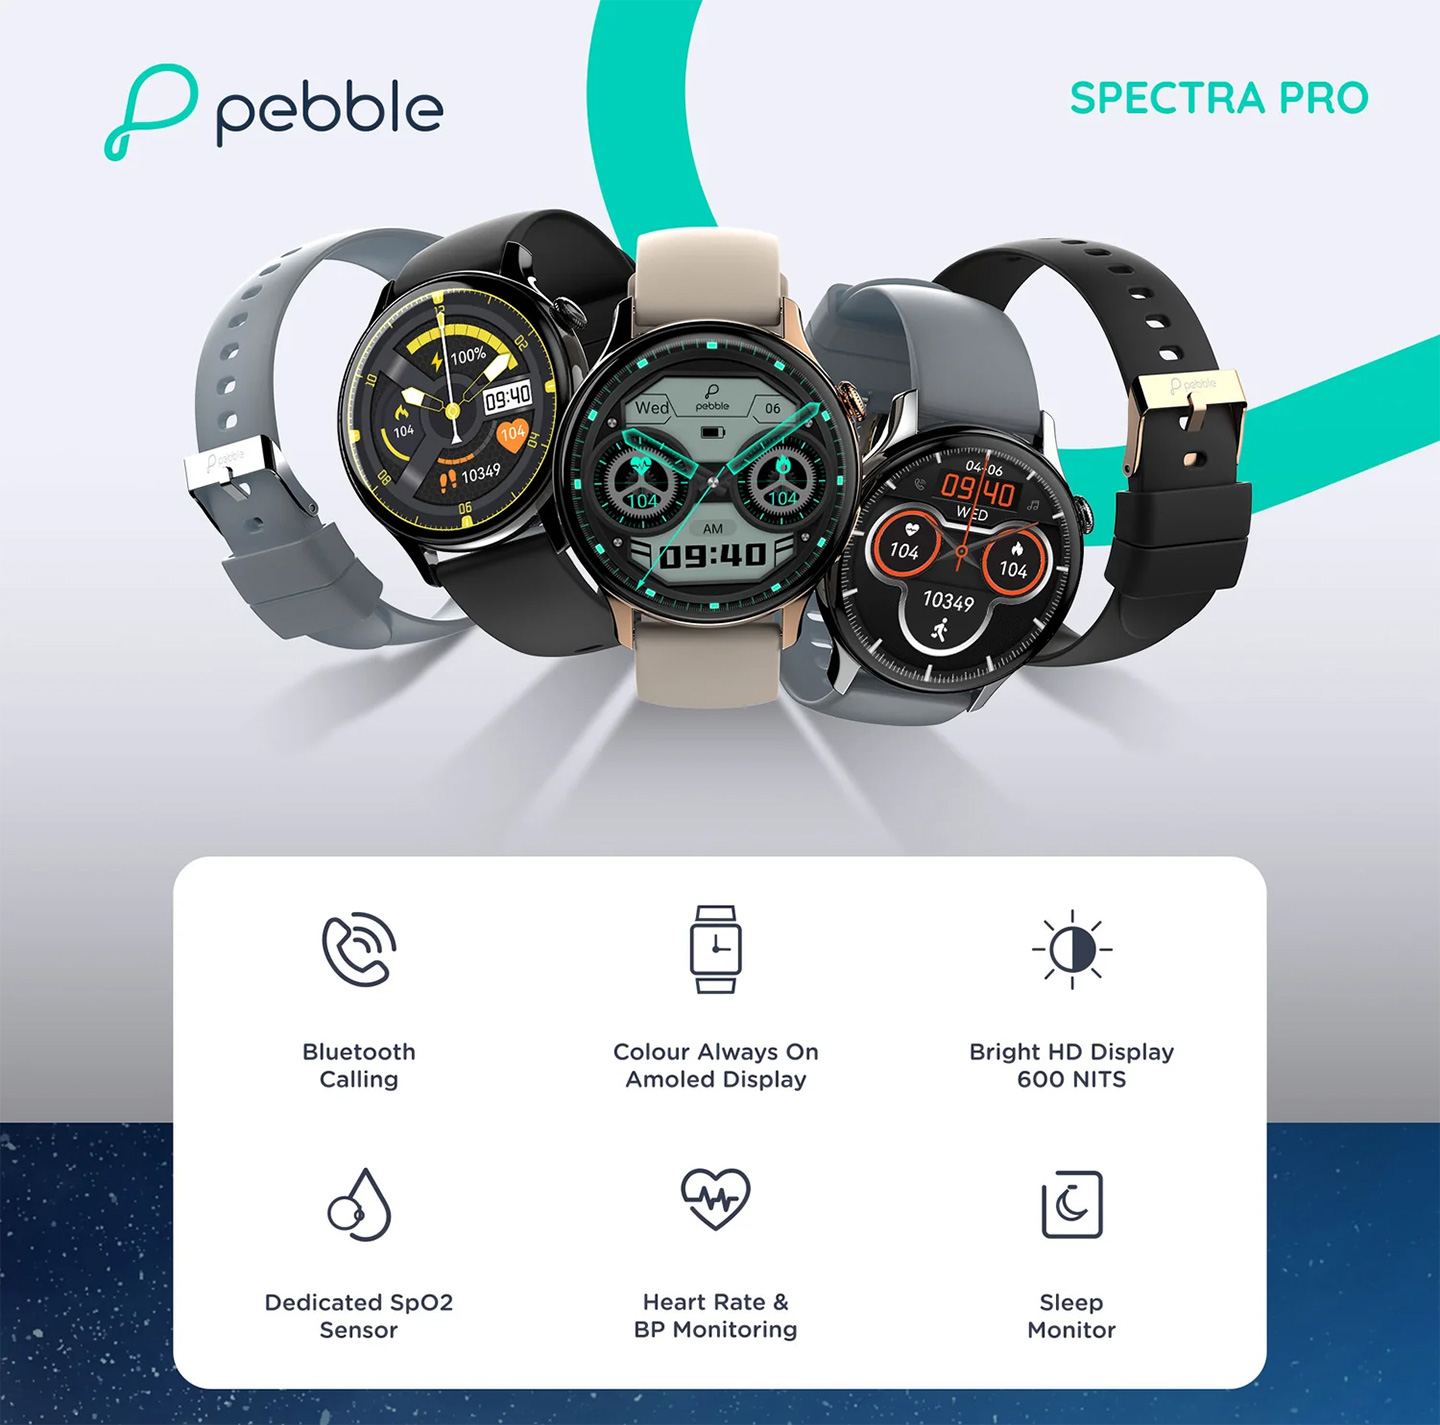 Pebble Spectra Pro